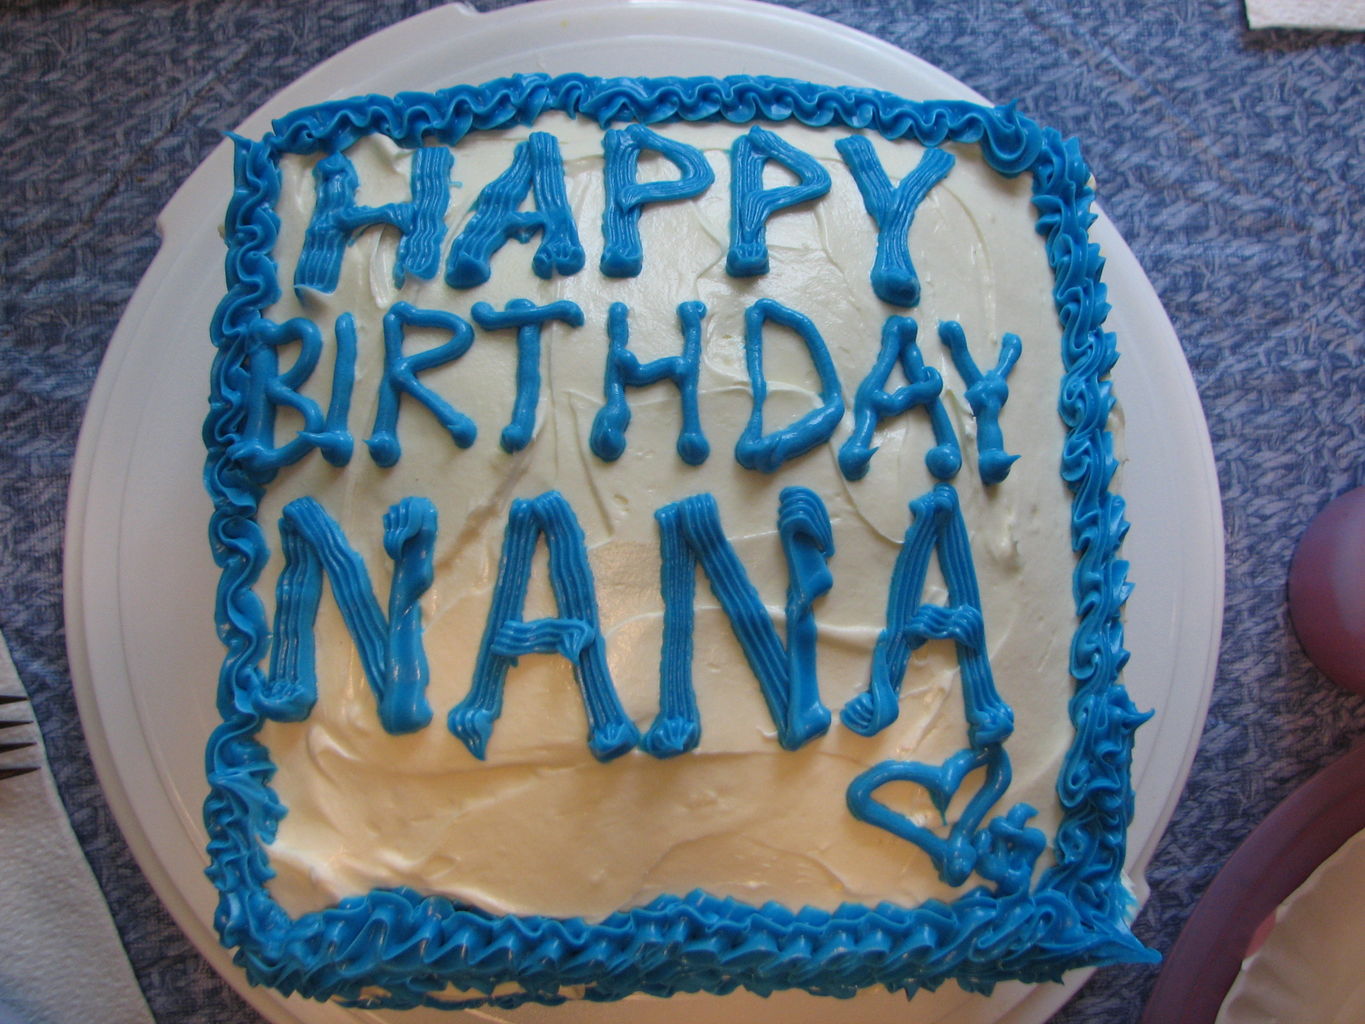 Nana's Birthday Celebration
